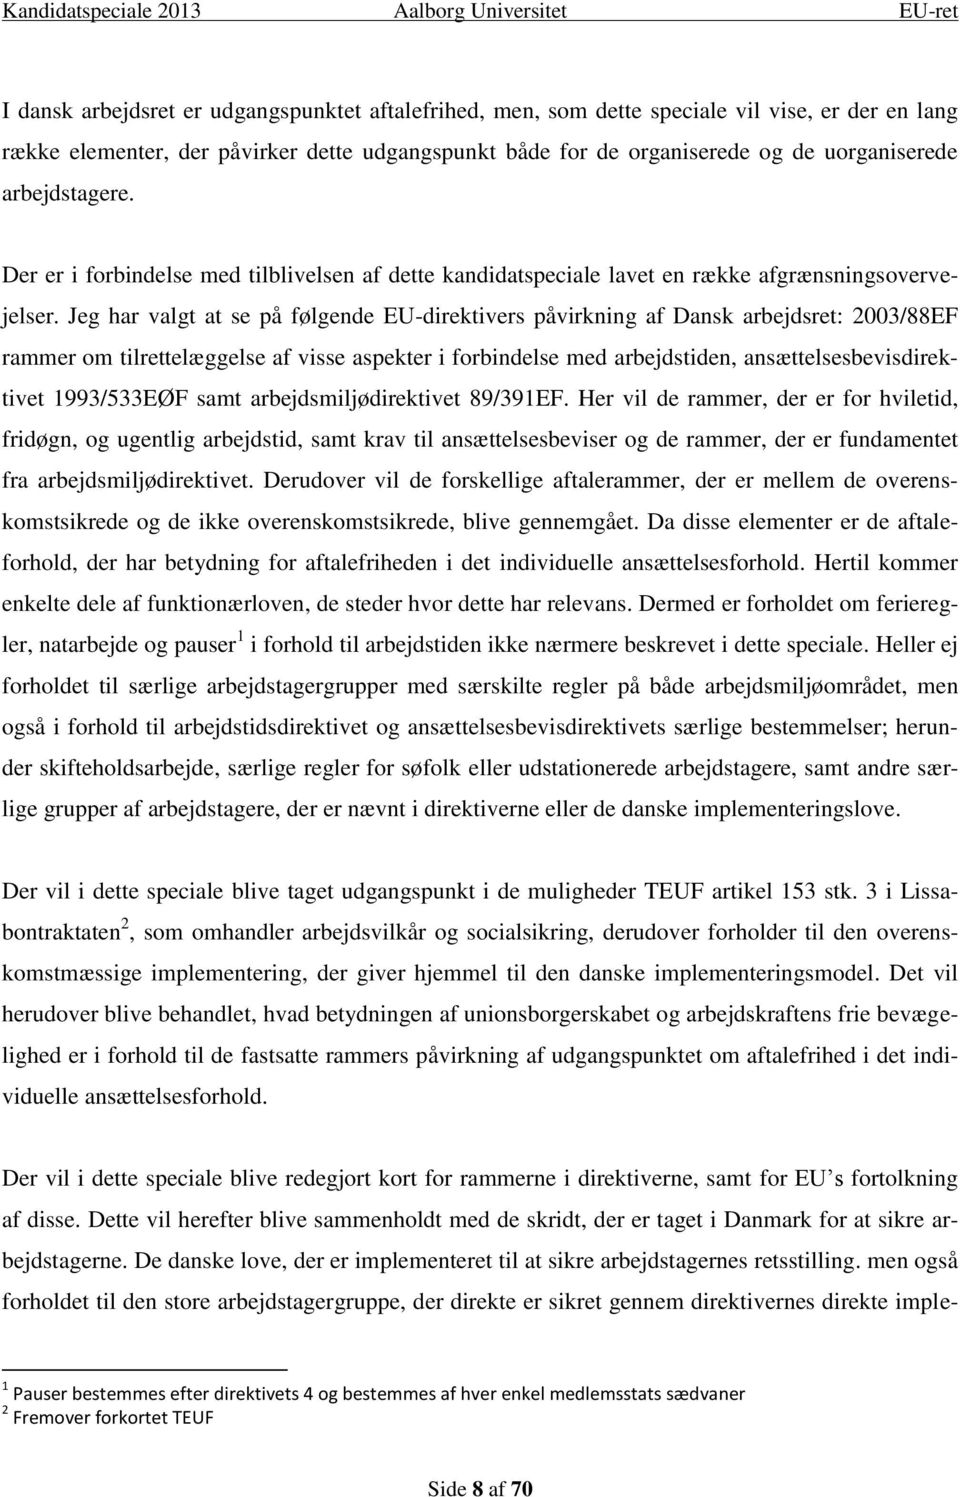 Jeg har valgt at se på følgende EU-direktivers påvirkning af Dansk arbejdsret: 2003/88EF rammer om tilrettelæggelse af visse aspekter i forbindelse med arbejdstiden, ansættelsesbevisdirektivet